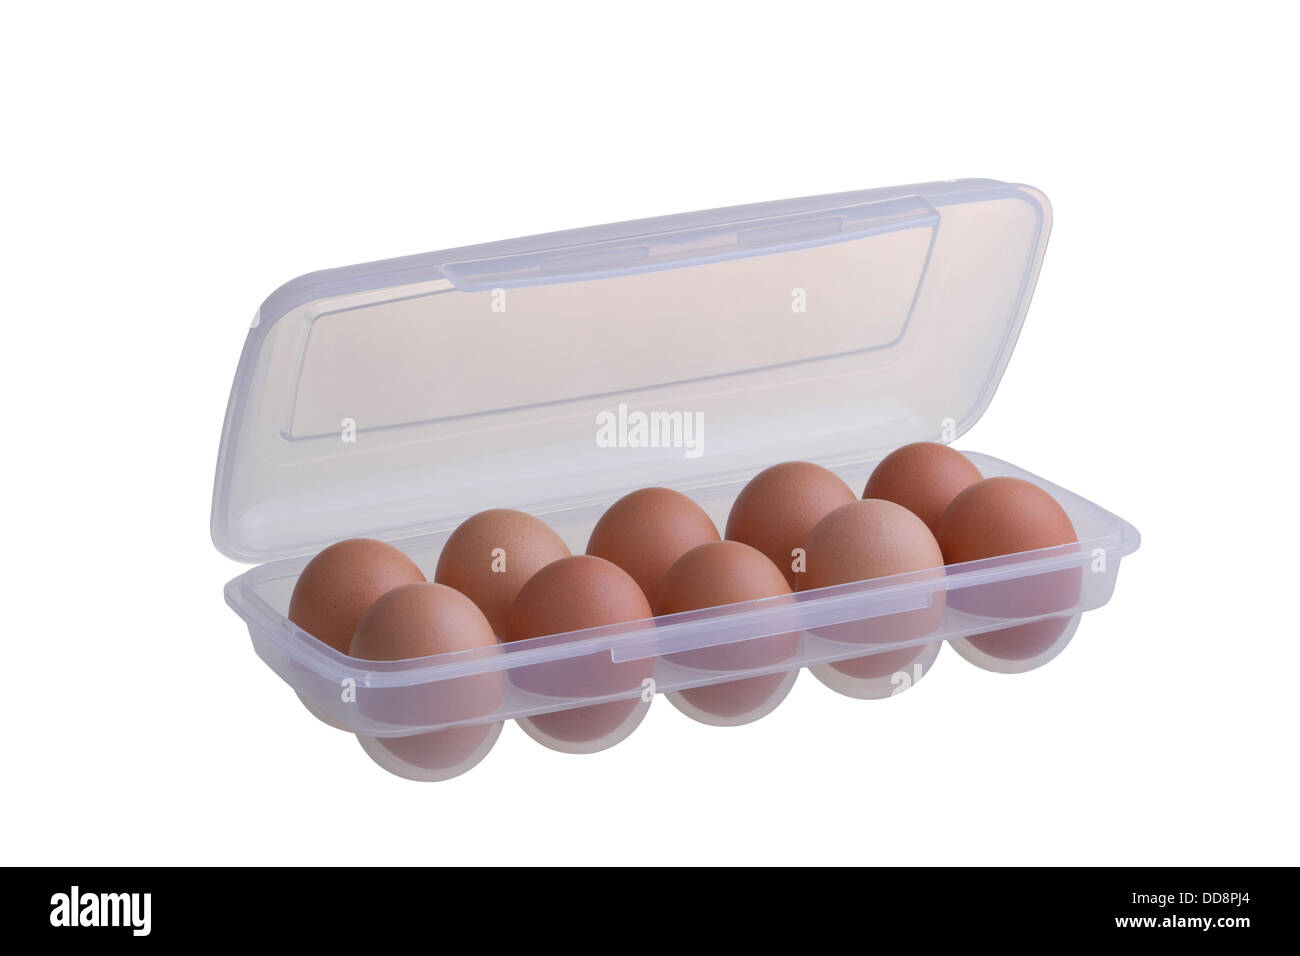 Uova in confezione di plastica isolati su sfondo bianco Foto Stock